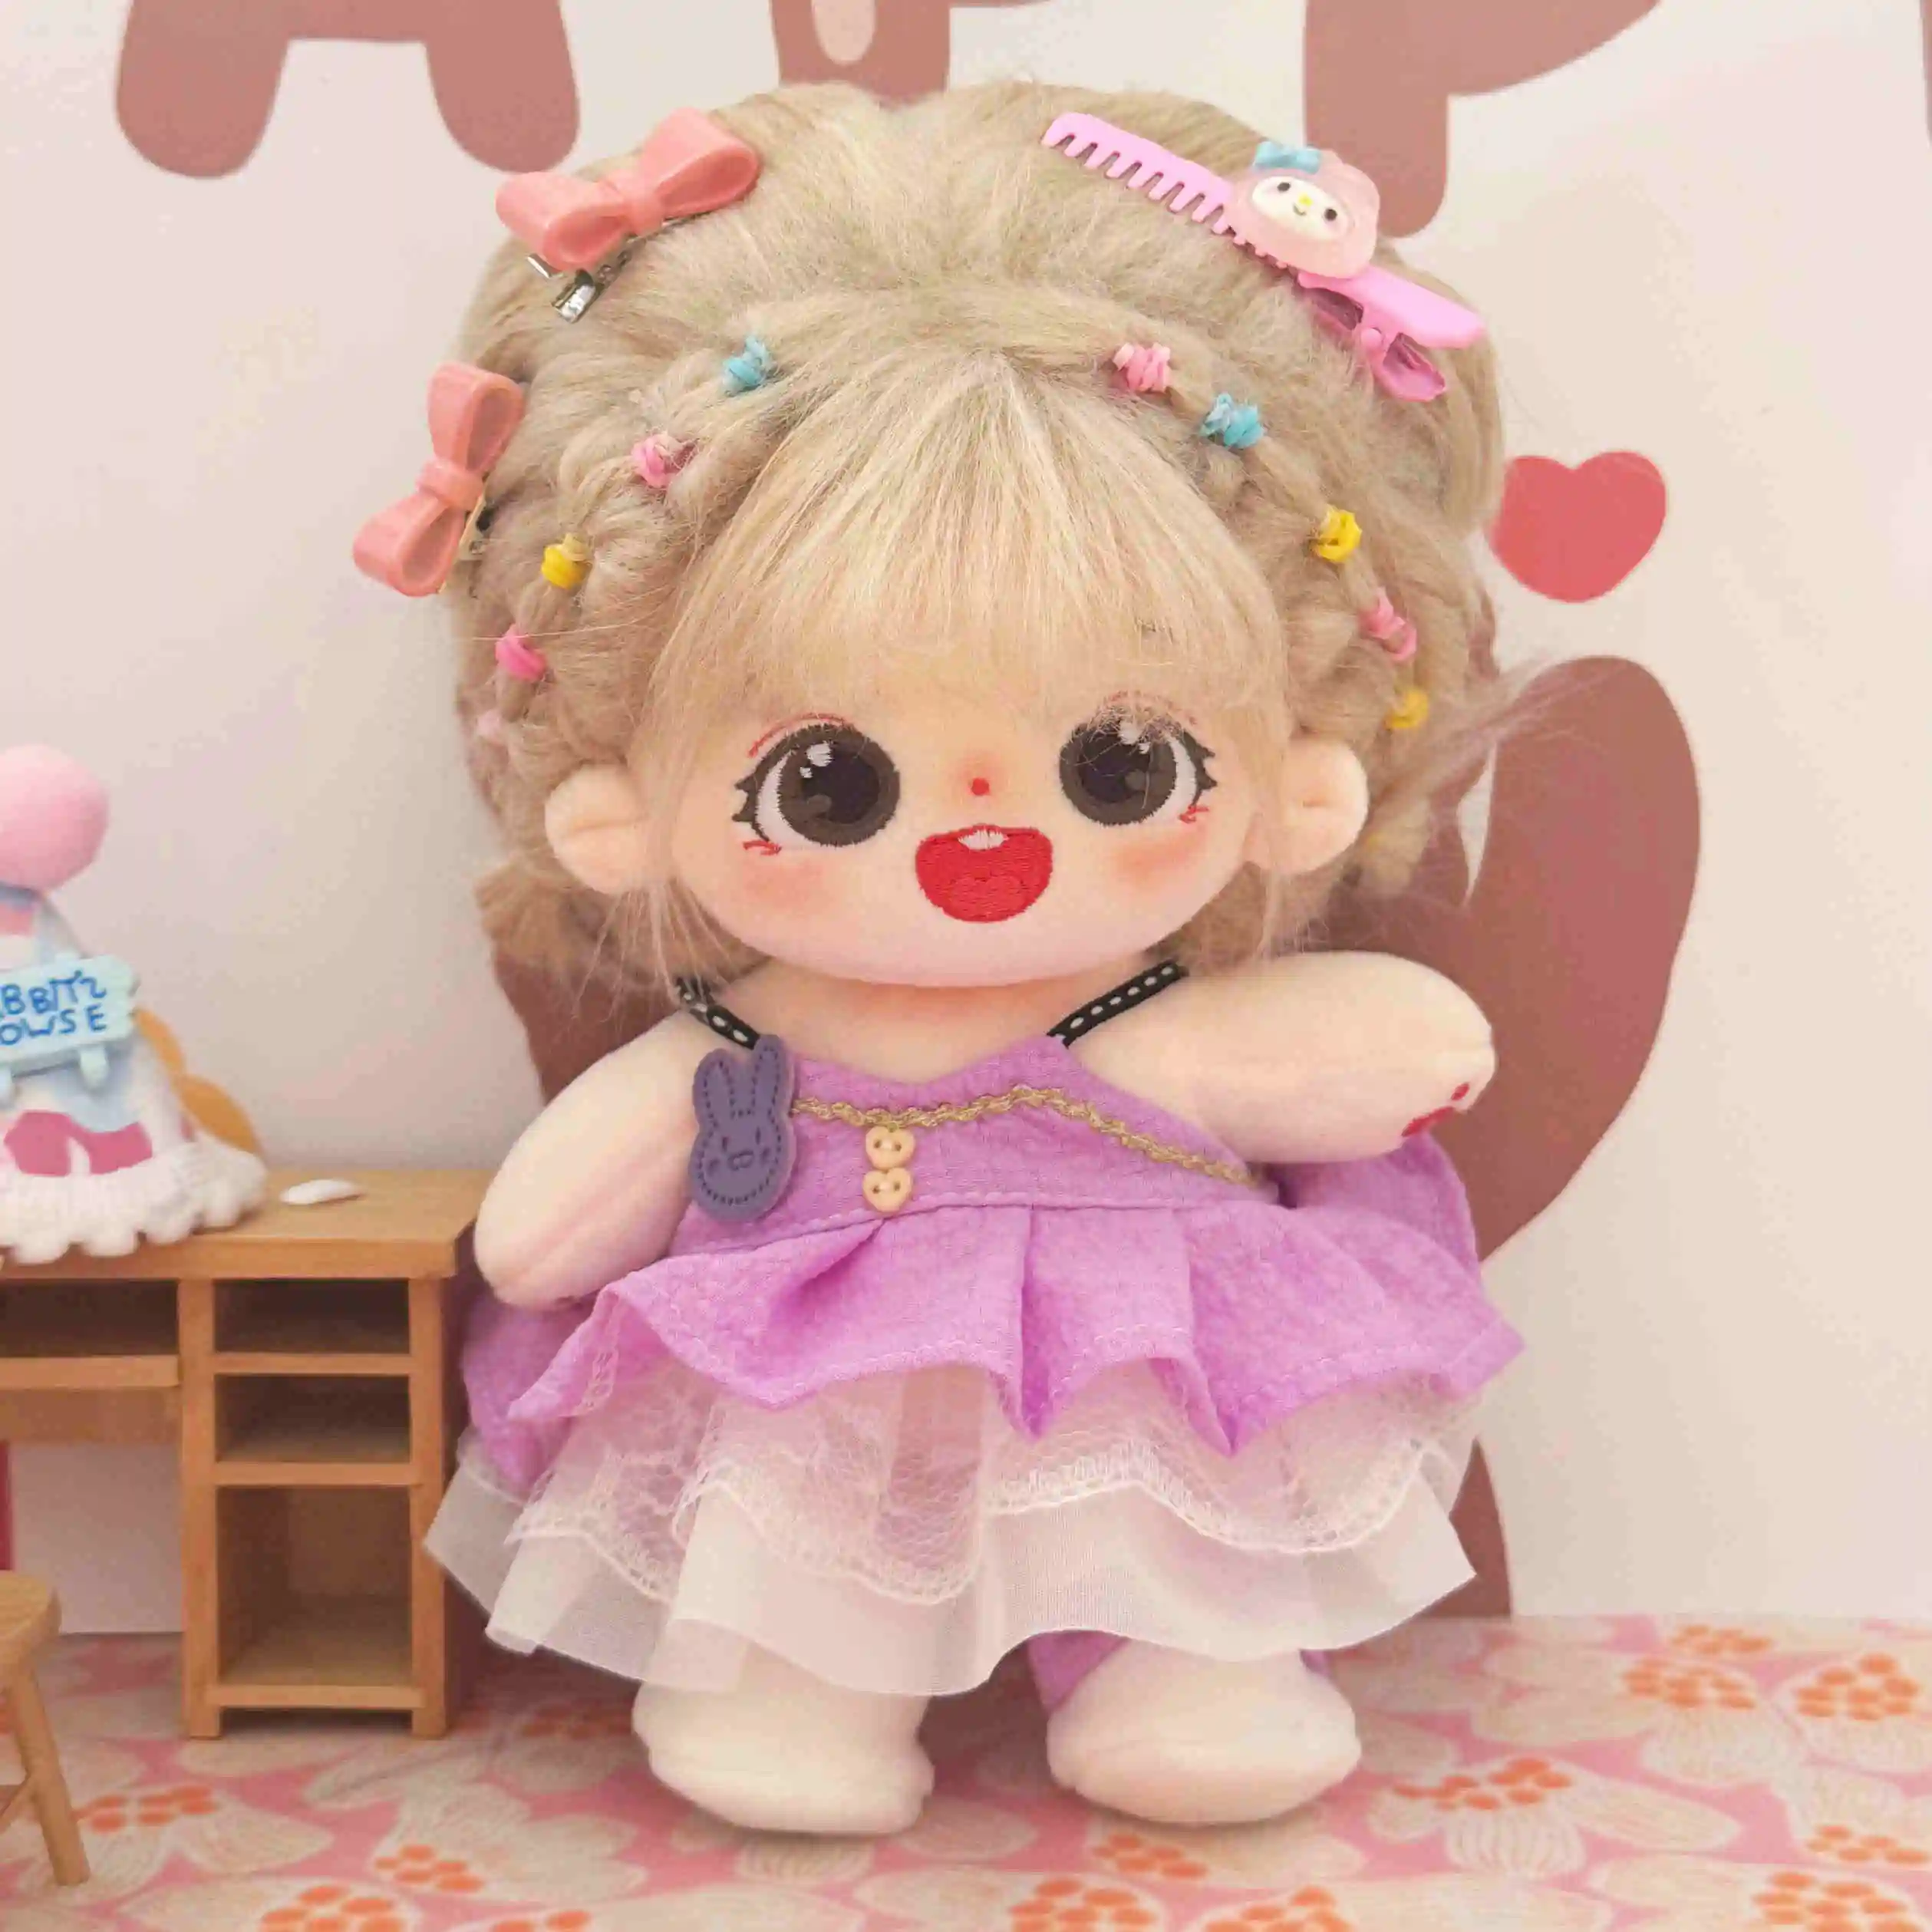 Bambola personalizzata 20cm di cotone carina con vestiti lunghi e ricci coda di cavallo Baby Doll fornisce un servizio personalizzato OEM ODM